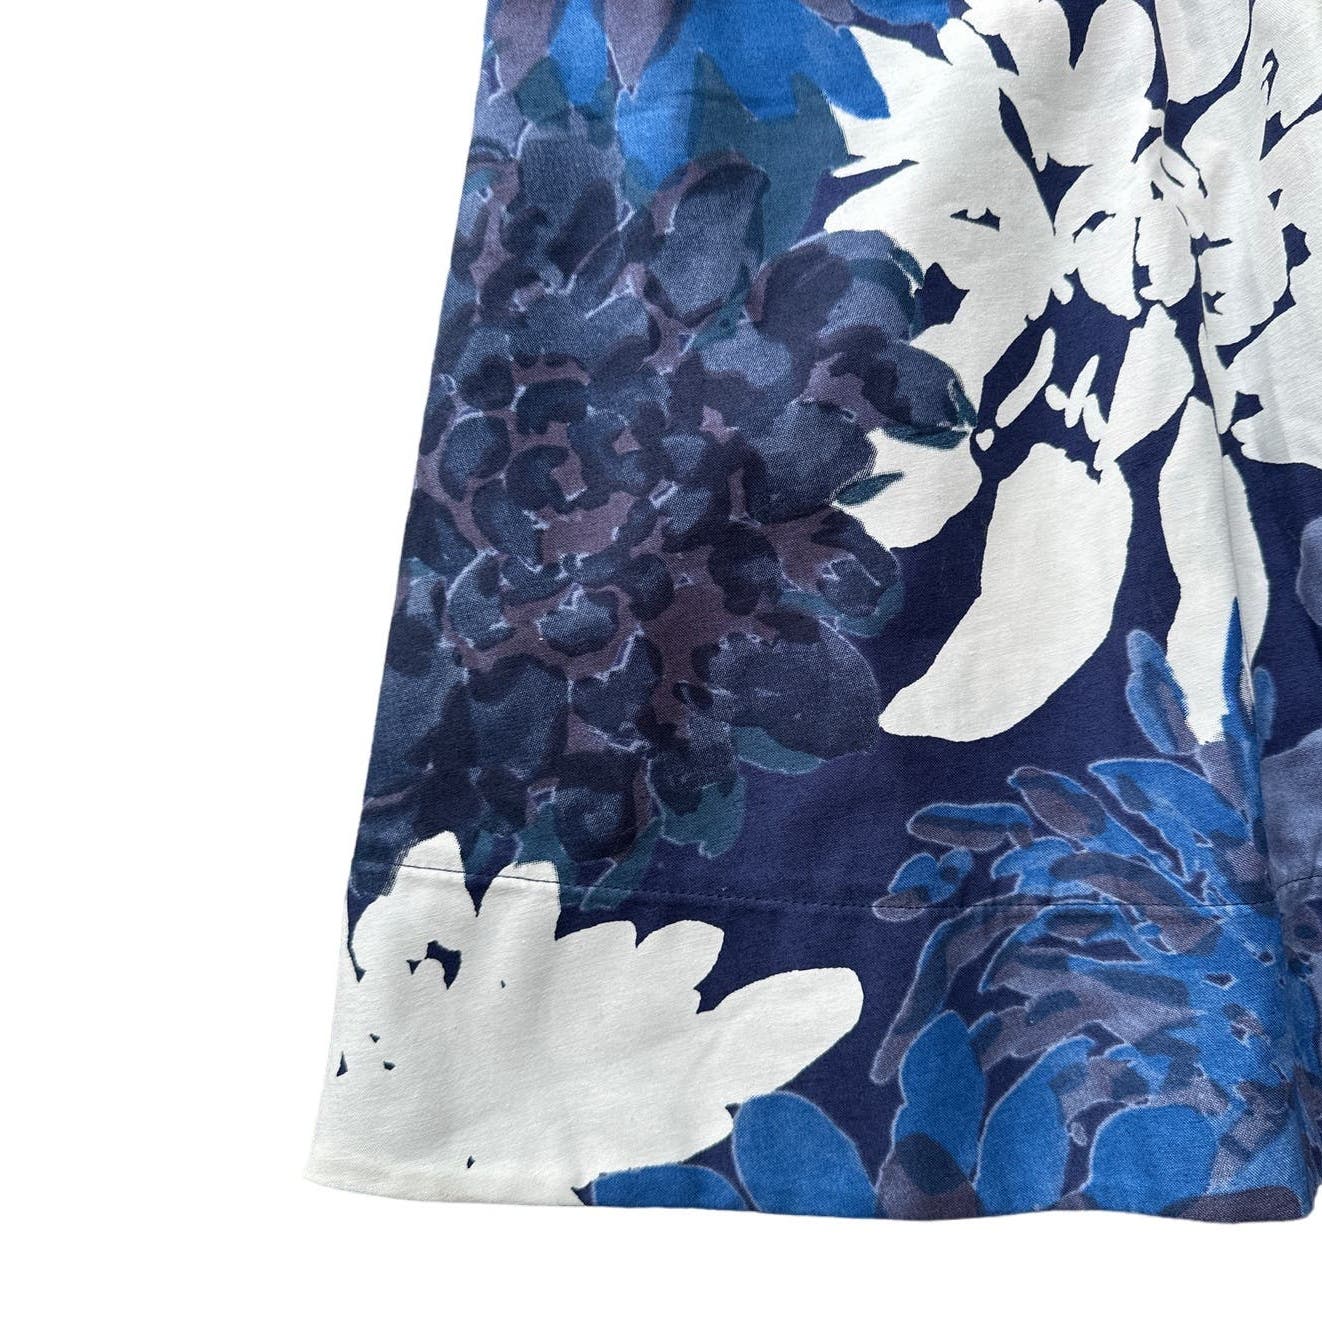 Marimekko for Anthropologie Blue Floral Midi Skirt Sz 8